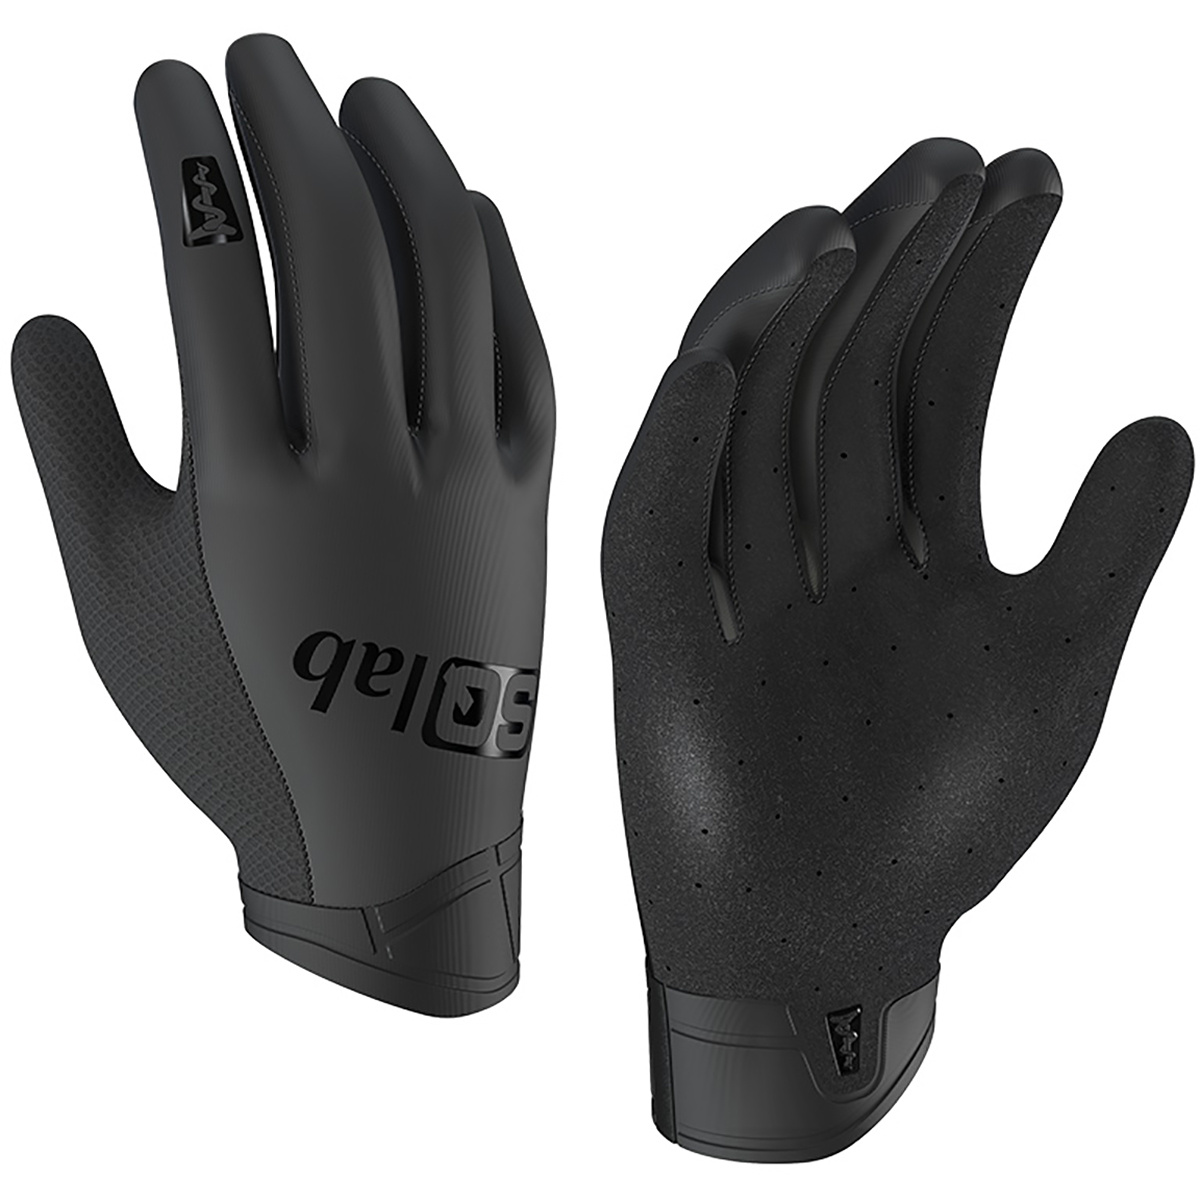 SQ-lab ONEOX Handschuhe von SQ-lab